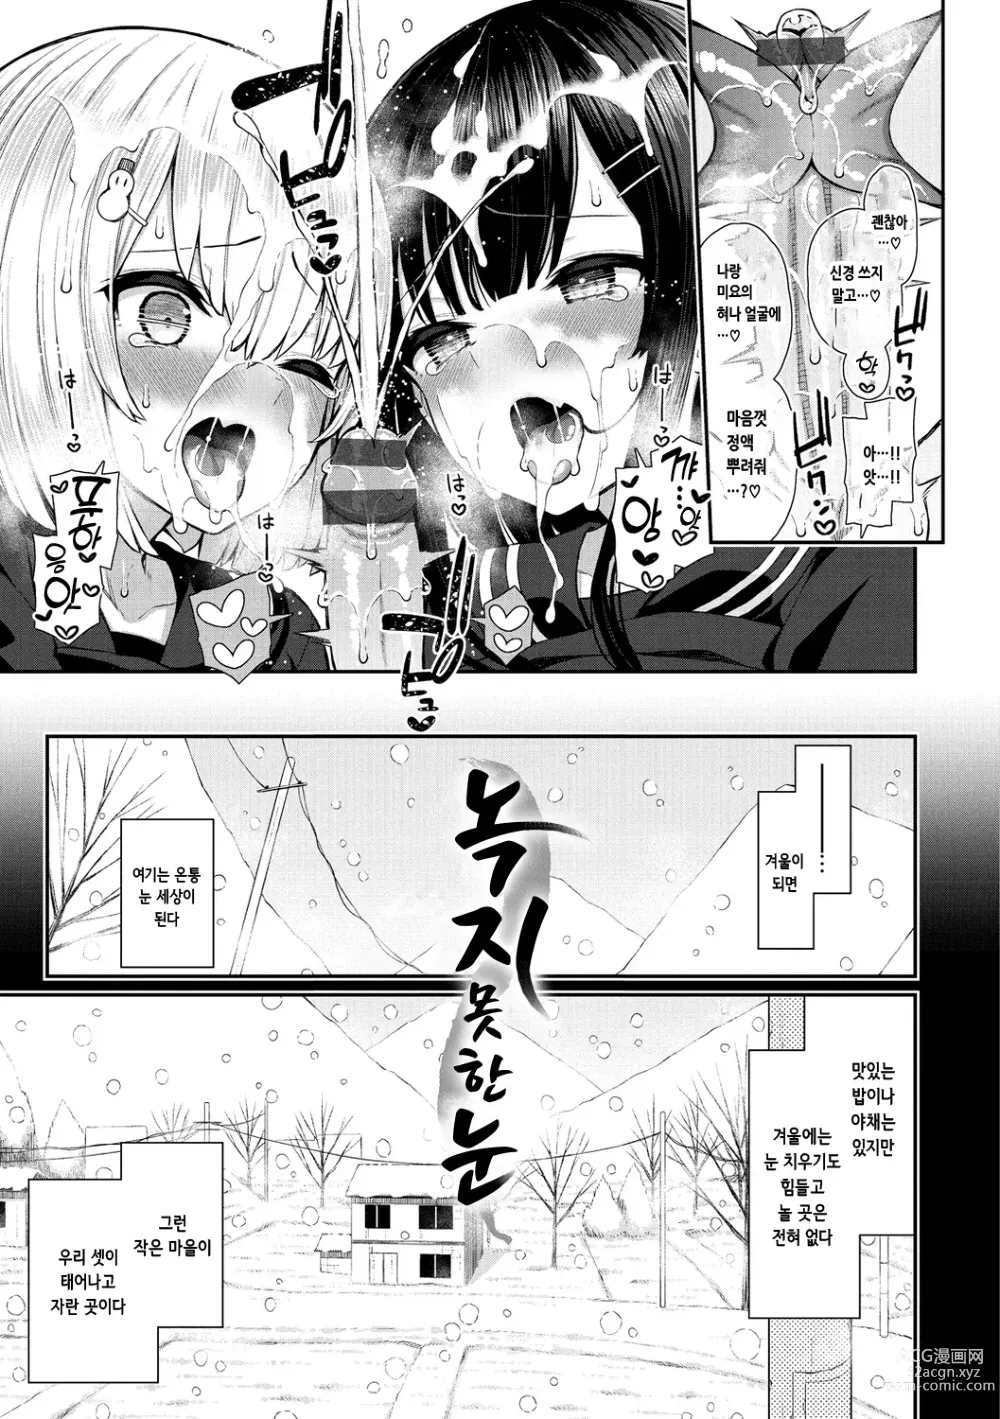 Page 7 of manga 체리 먹여줄래?